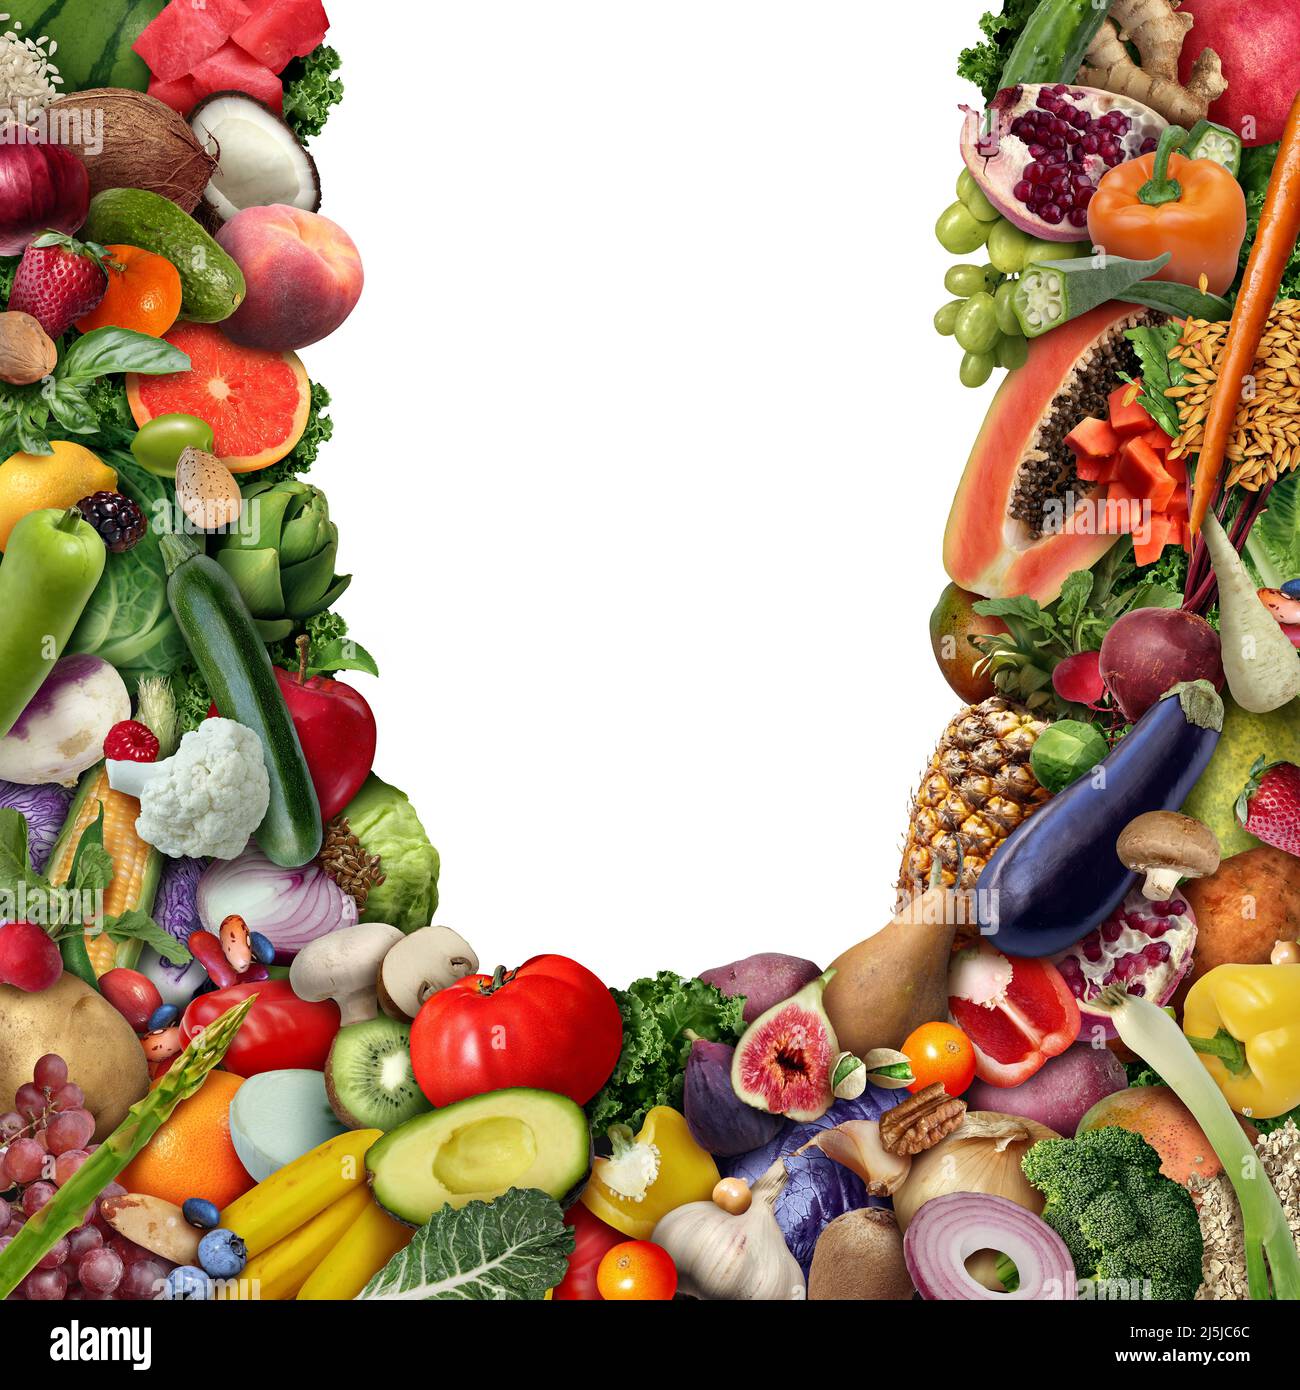 Obst und Gemüse Blank Frame Hintergrund oder vegan und Veganismus oder gesunde Lebensmittel als eine Gruppe von frischen reifen Früchten und Nüssen mit Bohnen als Diät. Stockfoto